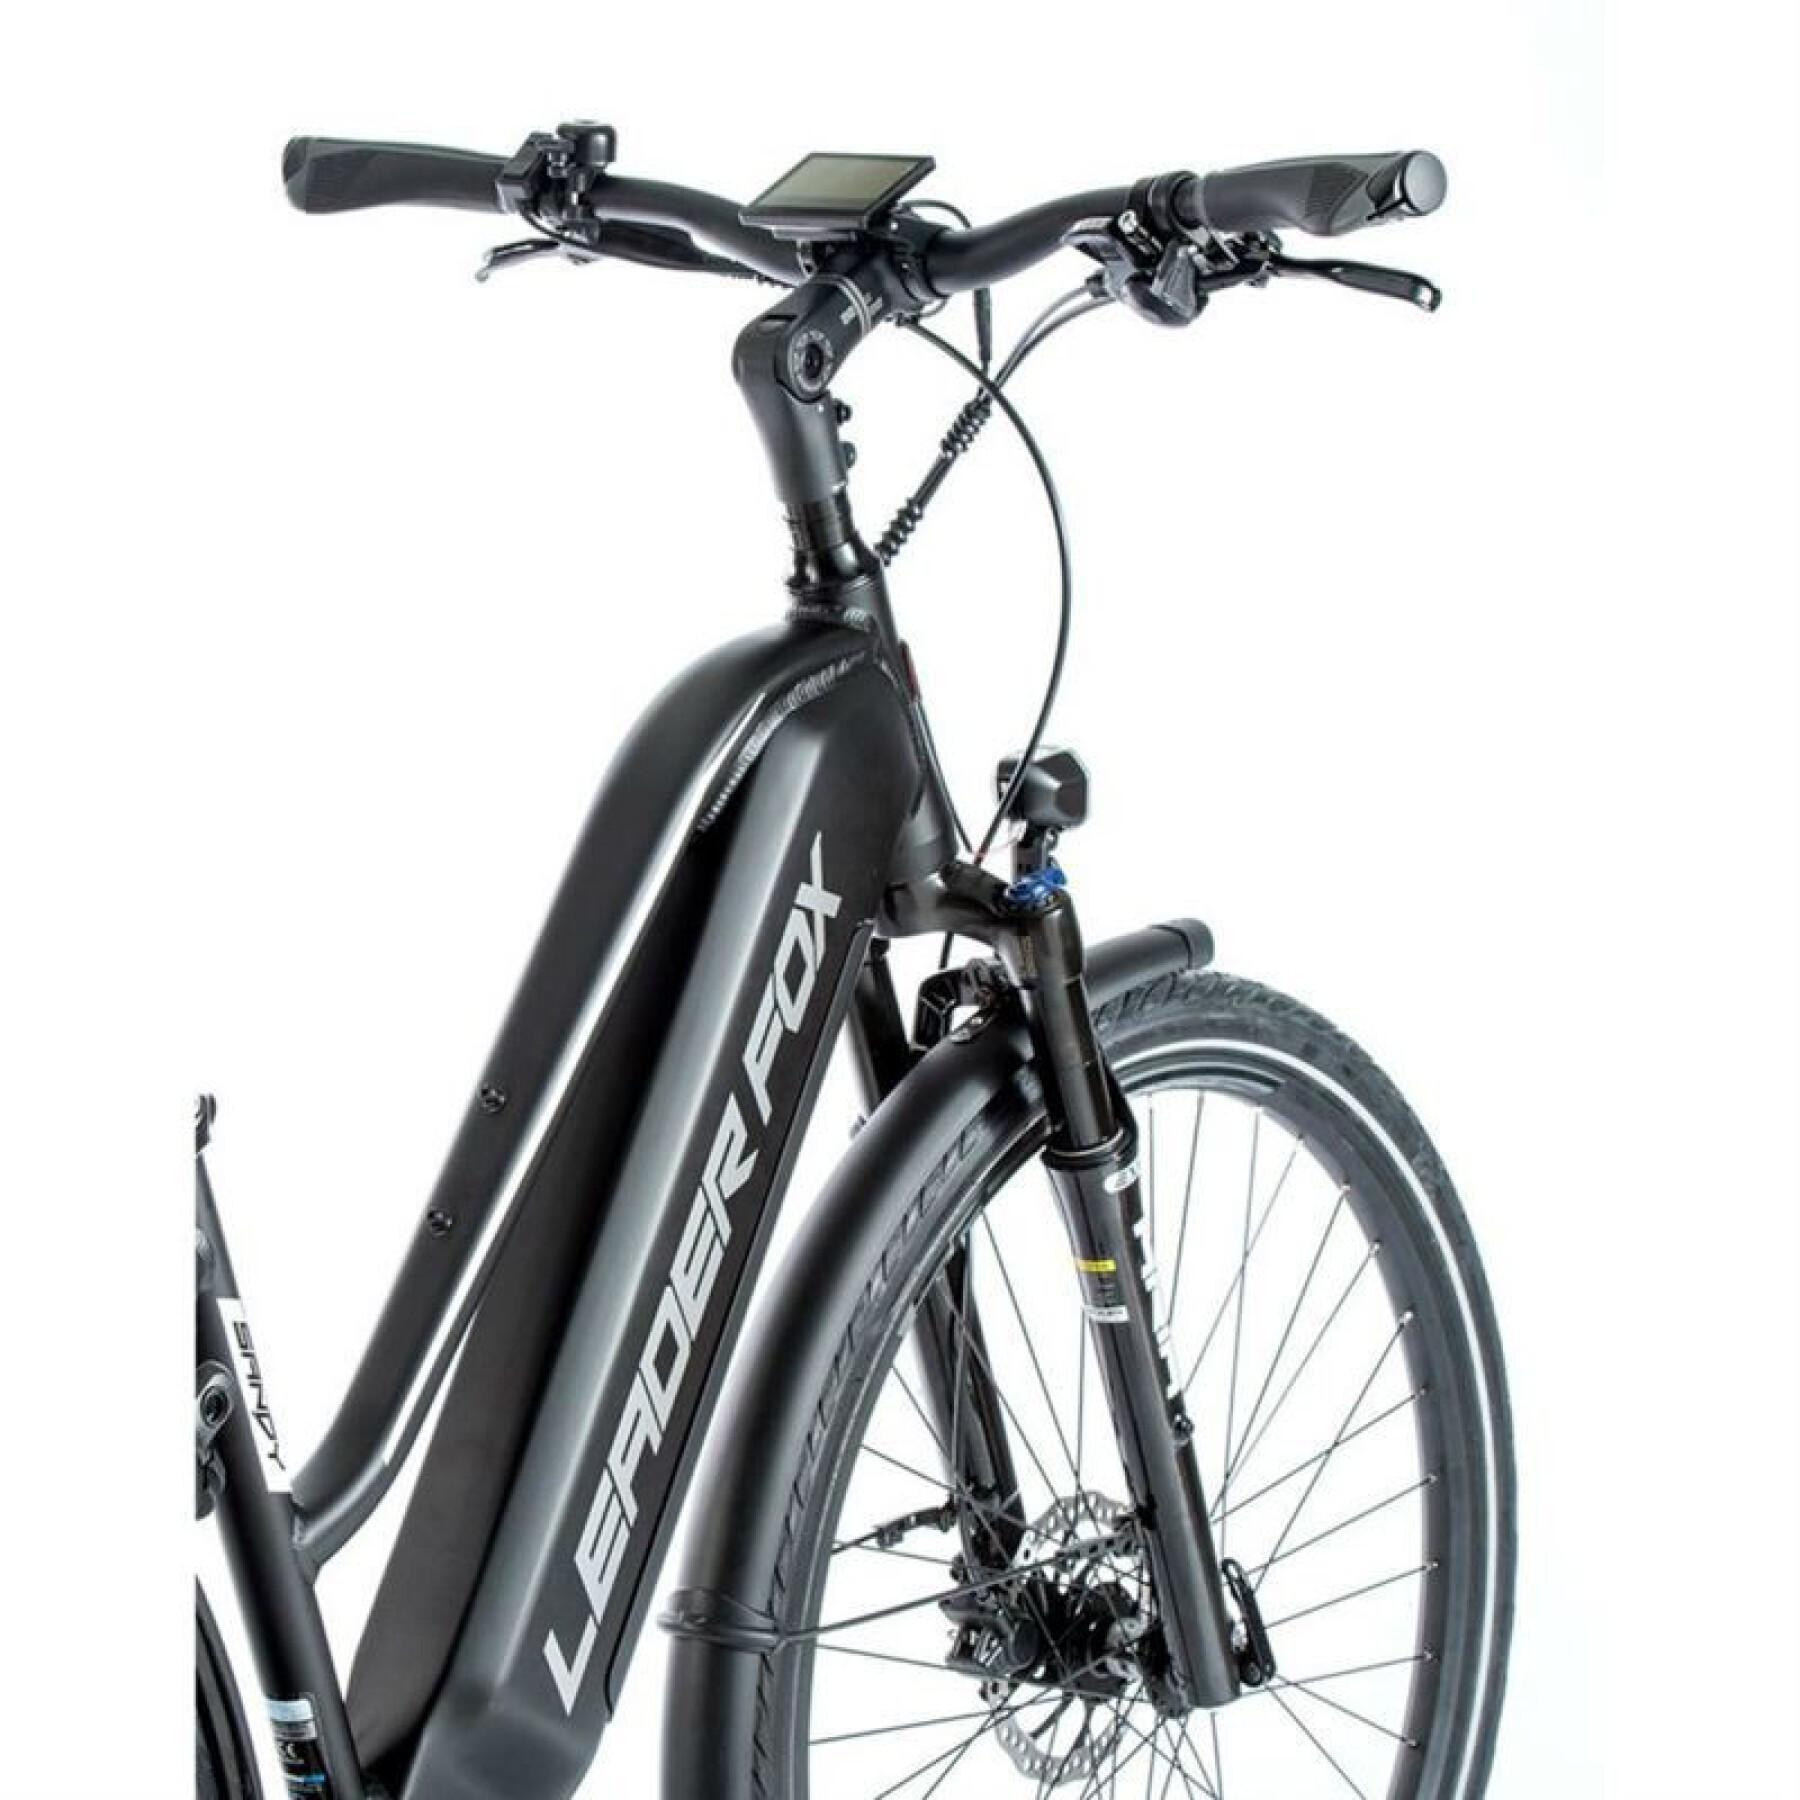 Bicicleta eléctrica city 28 motor rueda trasera mujer Leader Fox Sandy 2021 7V Bafang 36V 45NM 15AH